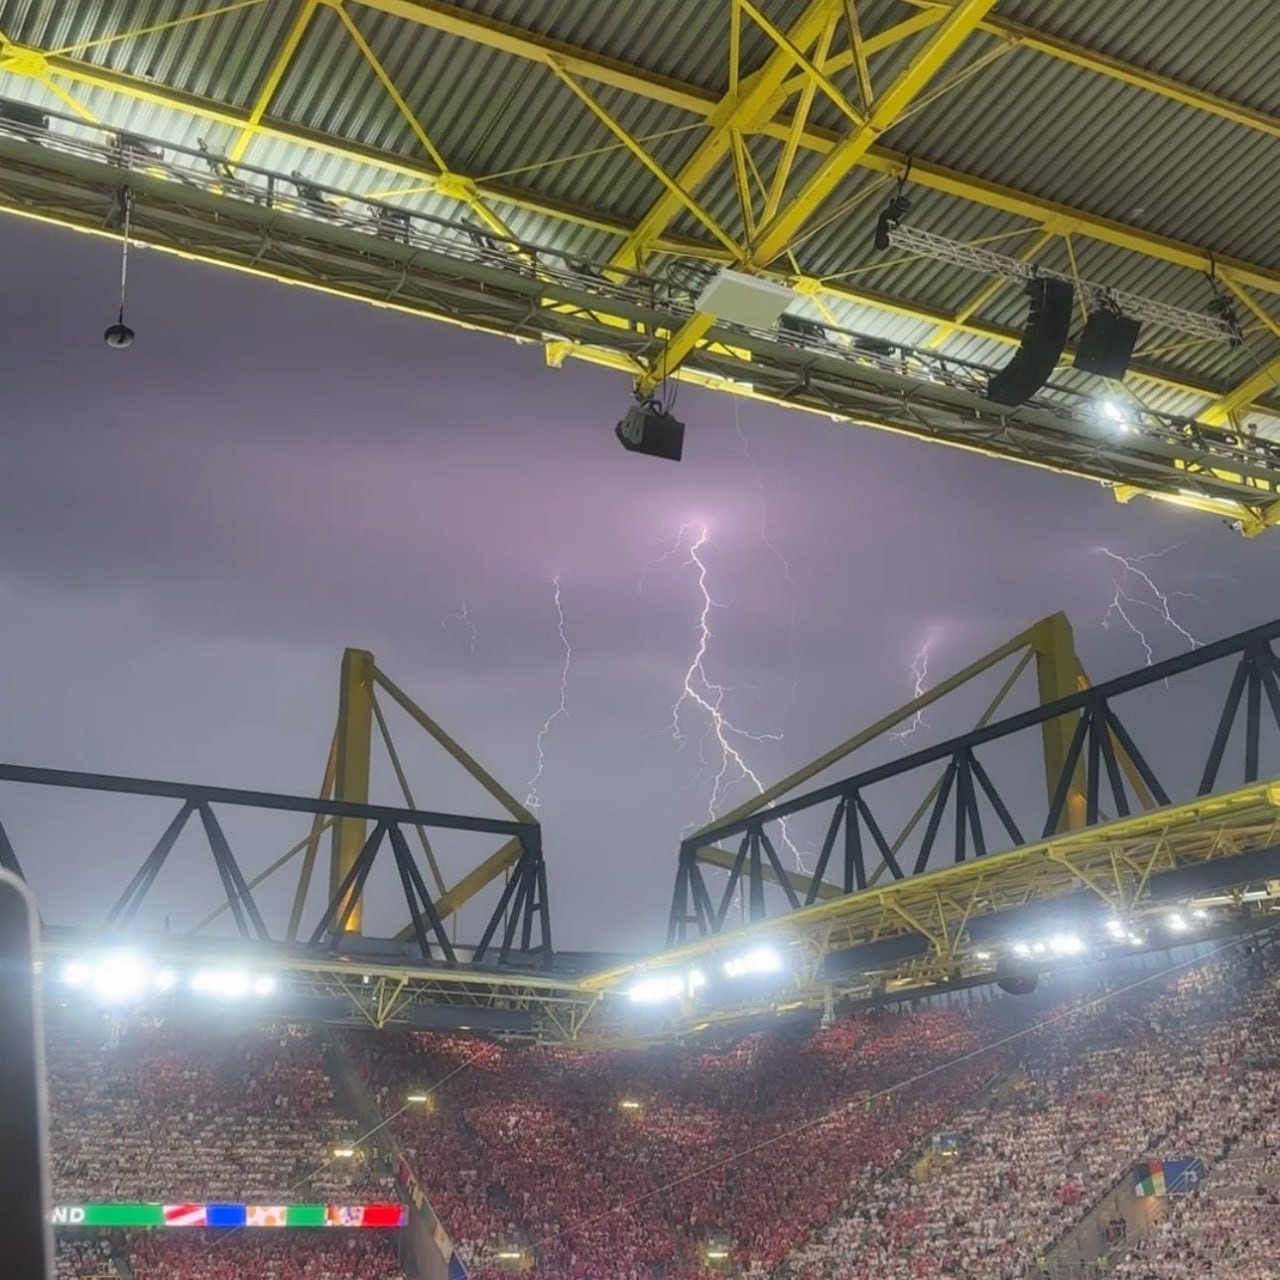 برخورد رعد و برق به سقف ورزشگاه و باران شدید، دیدار آلمان و دانمارک را متوقف کرد